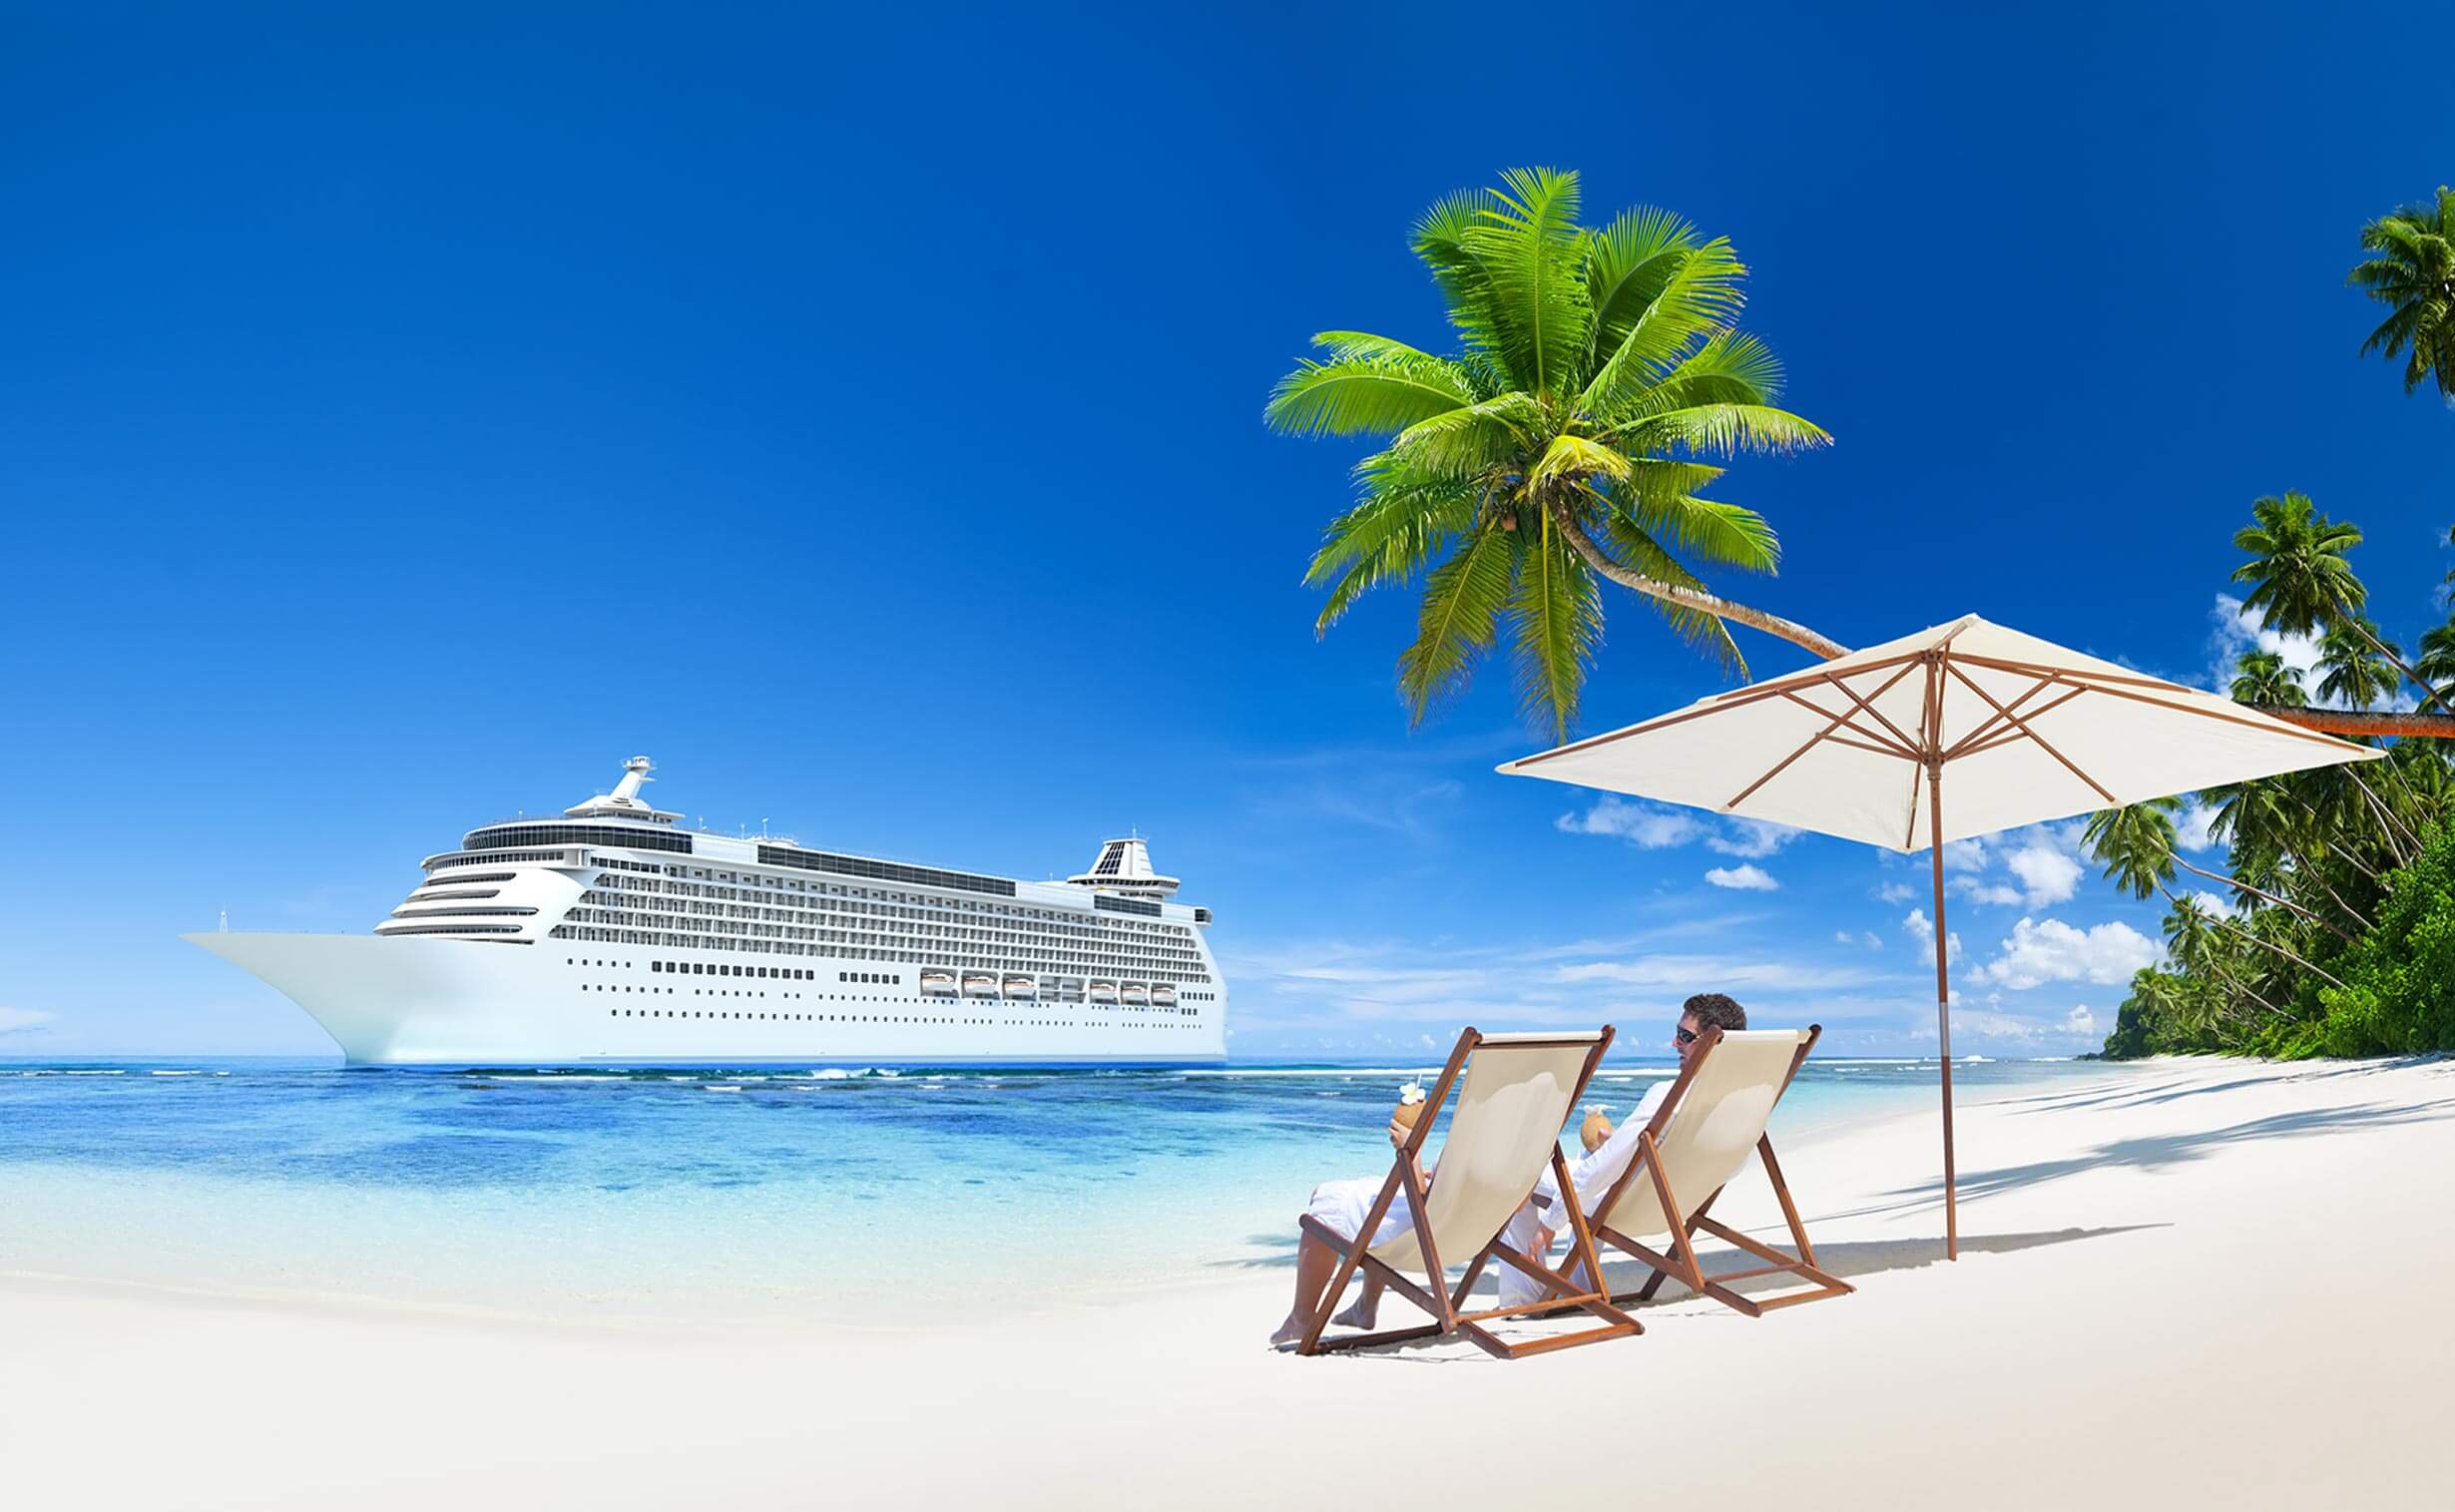 Bild: Kreuzfahrtschiff auf See, Insel Palme, zwei Sonnenstühle mit Mann und Frau